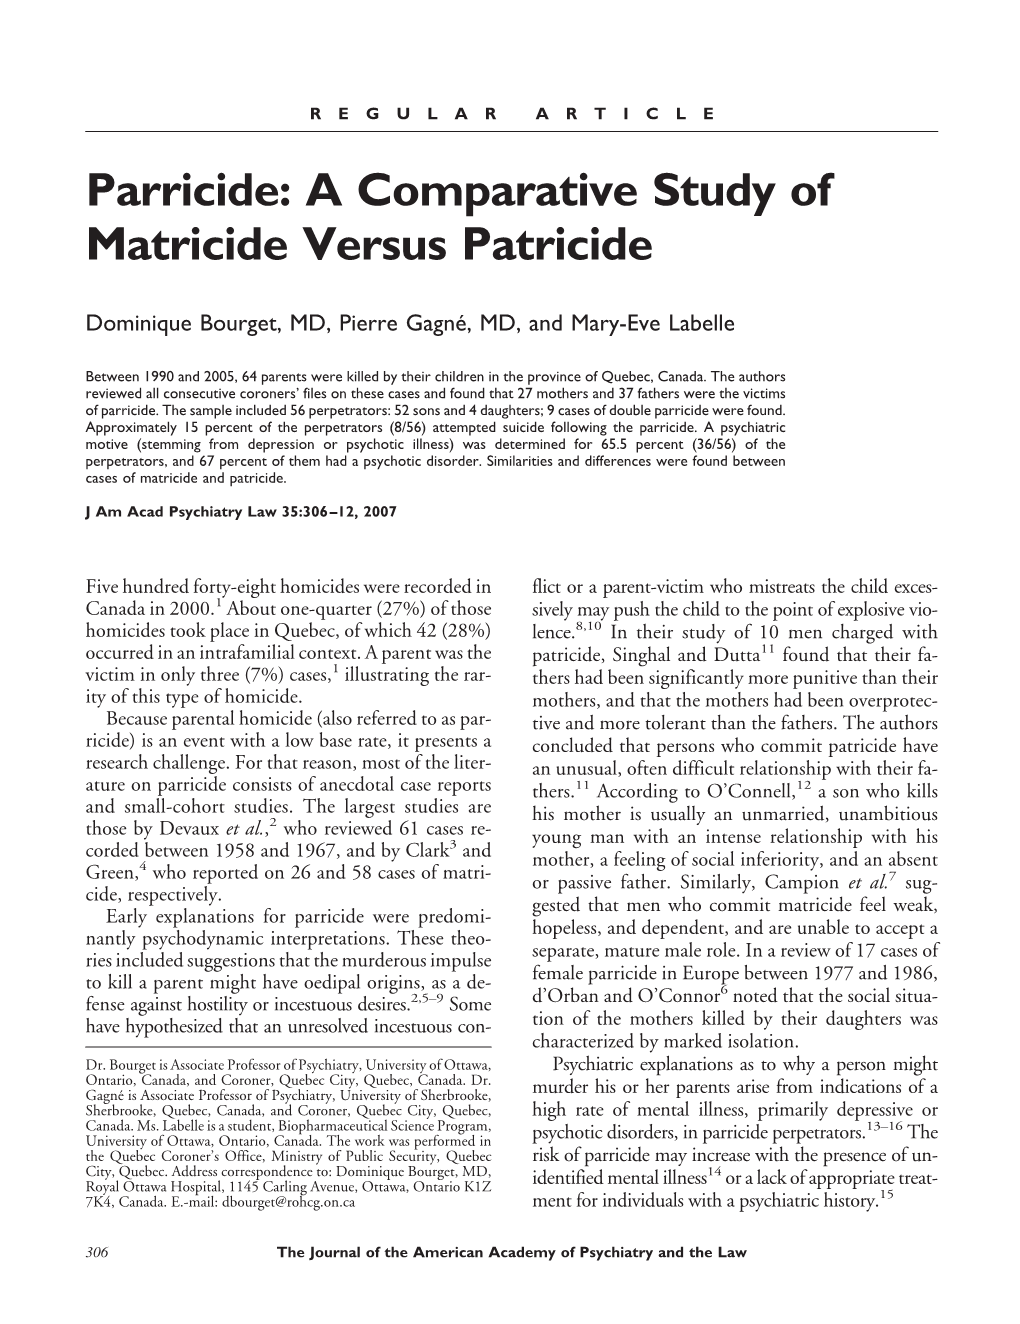 Parricide: a Comparative Study of Matricide Versus Patricide